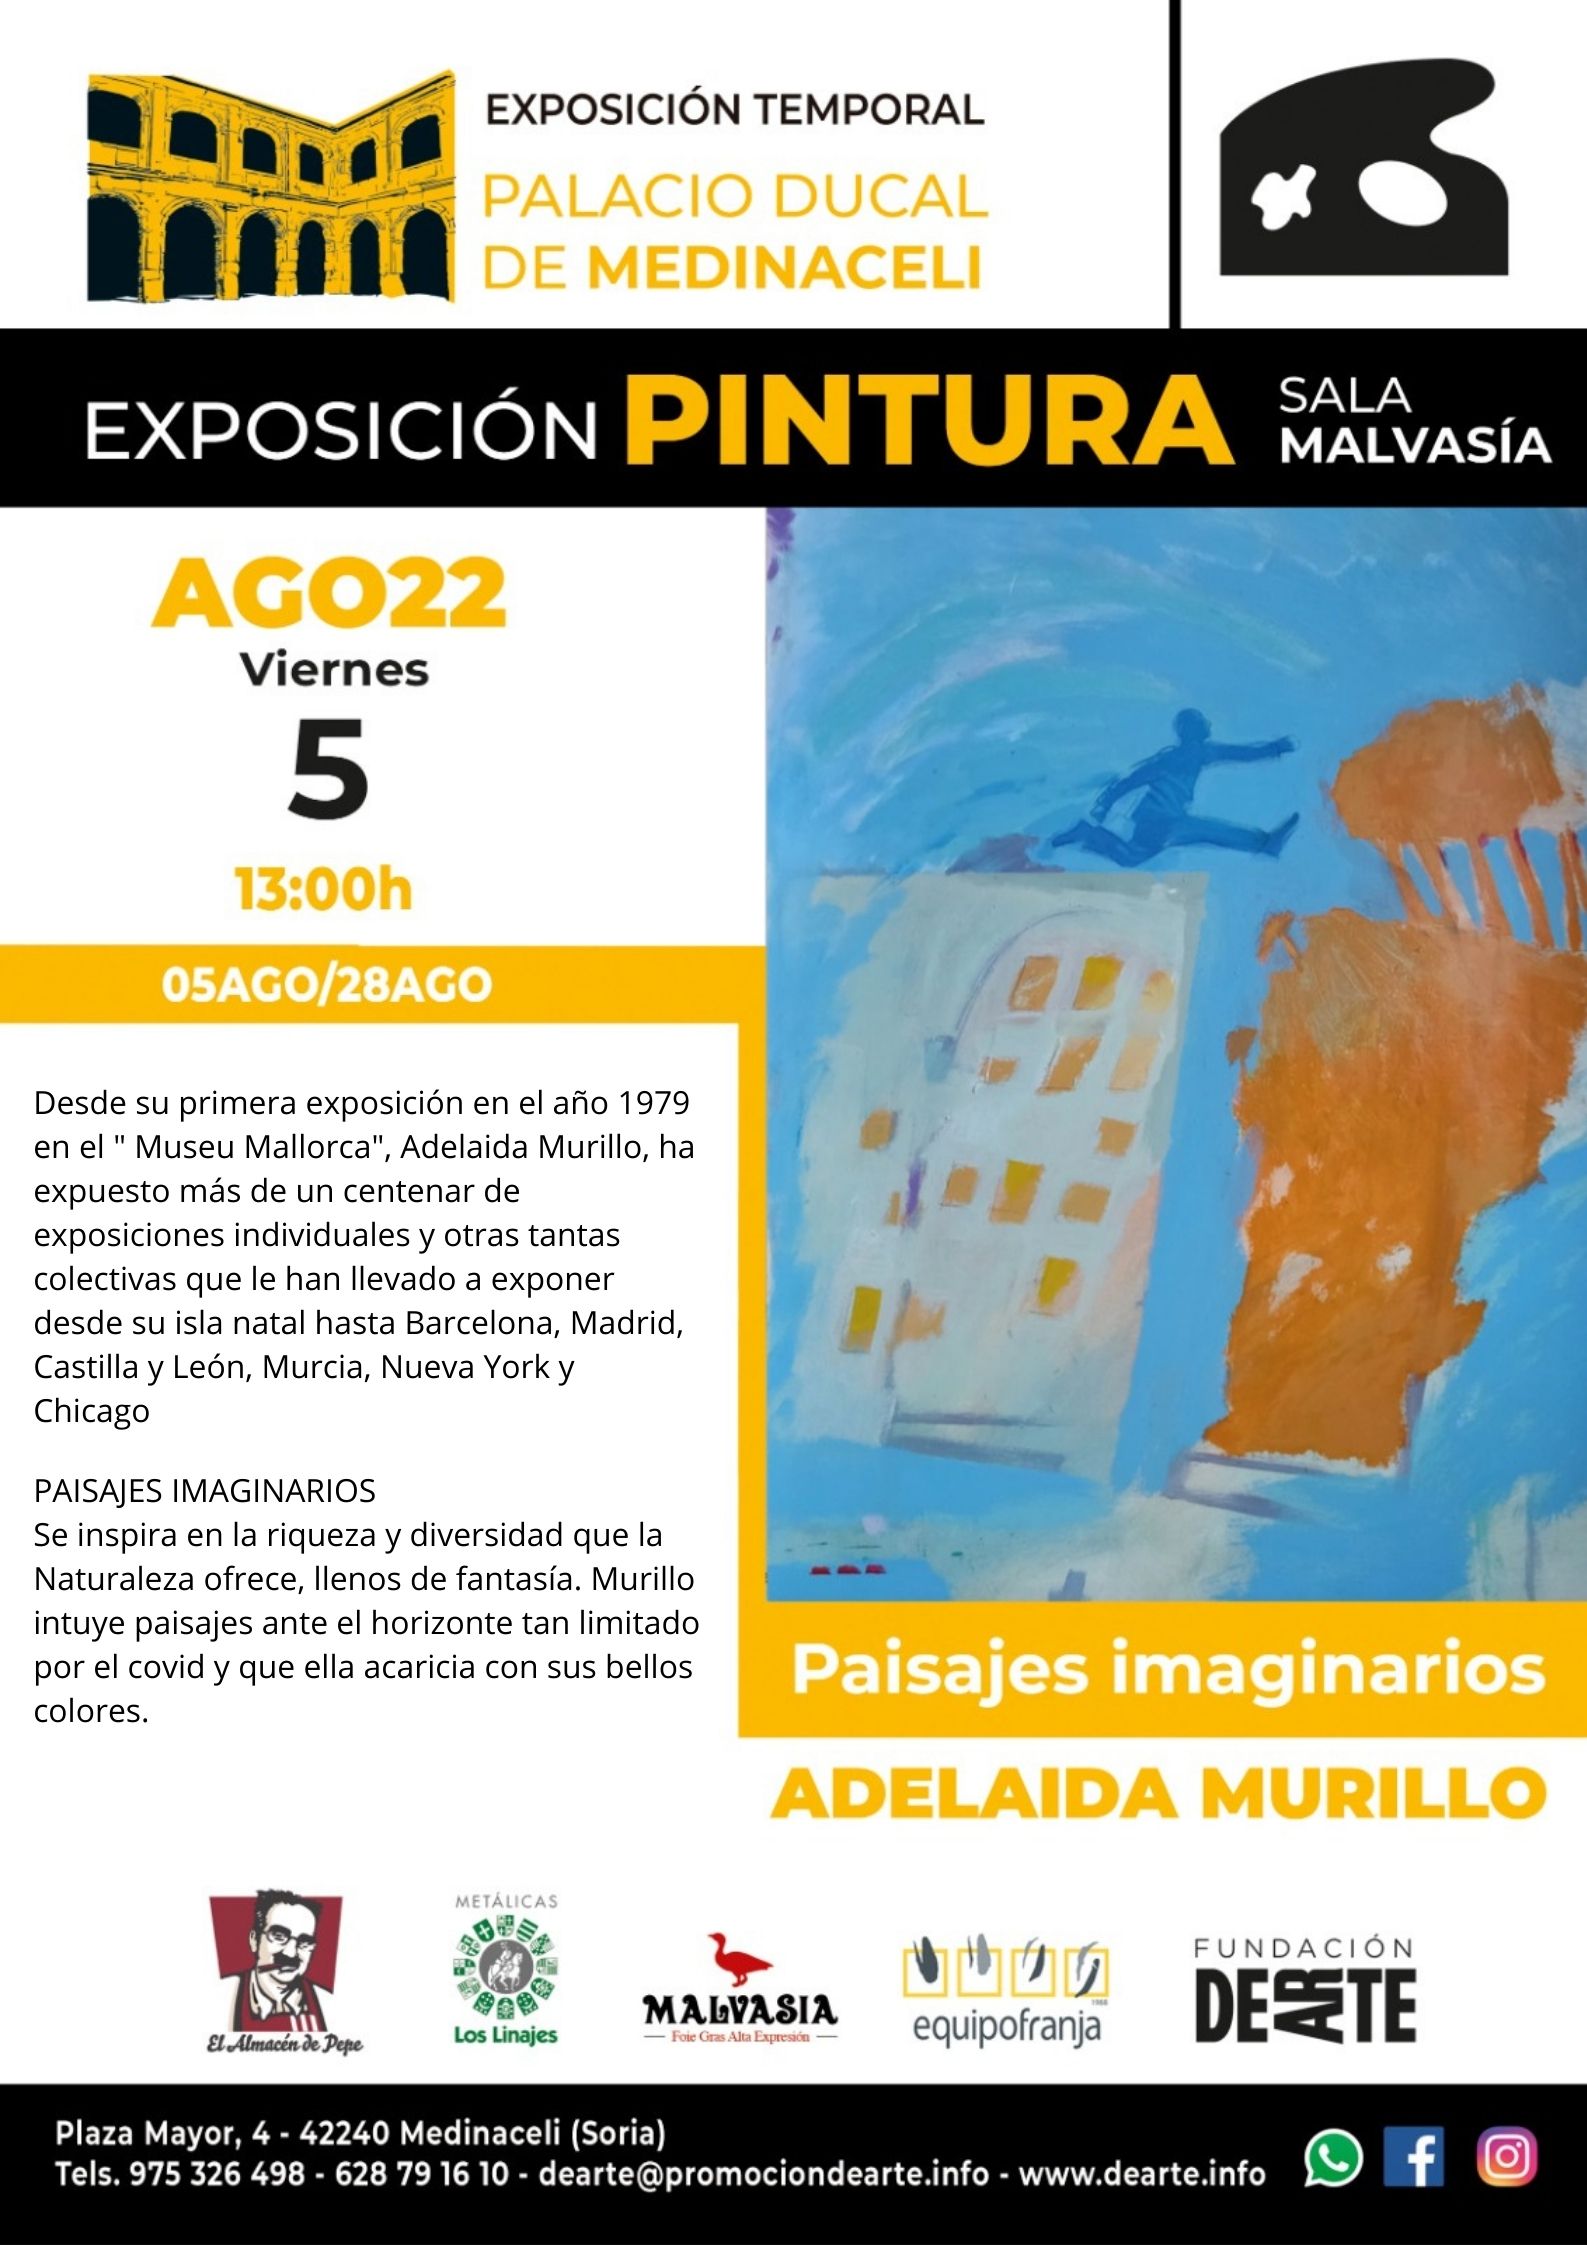 Exposición Temporal Adelaida Murillo ” PAISAJES IMAGINARIOS”